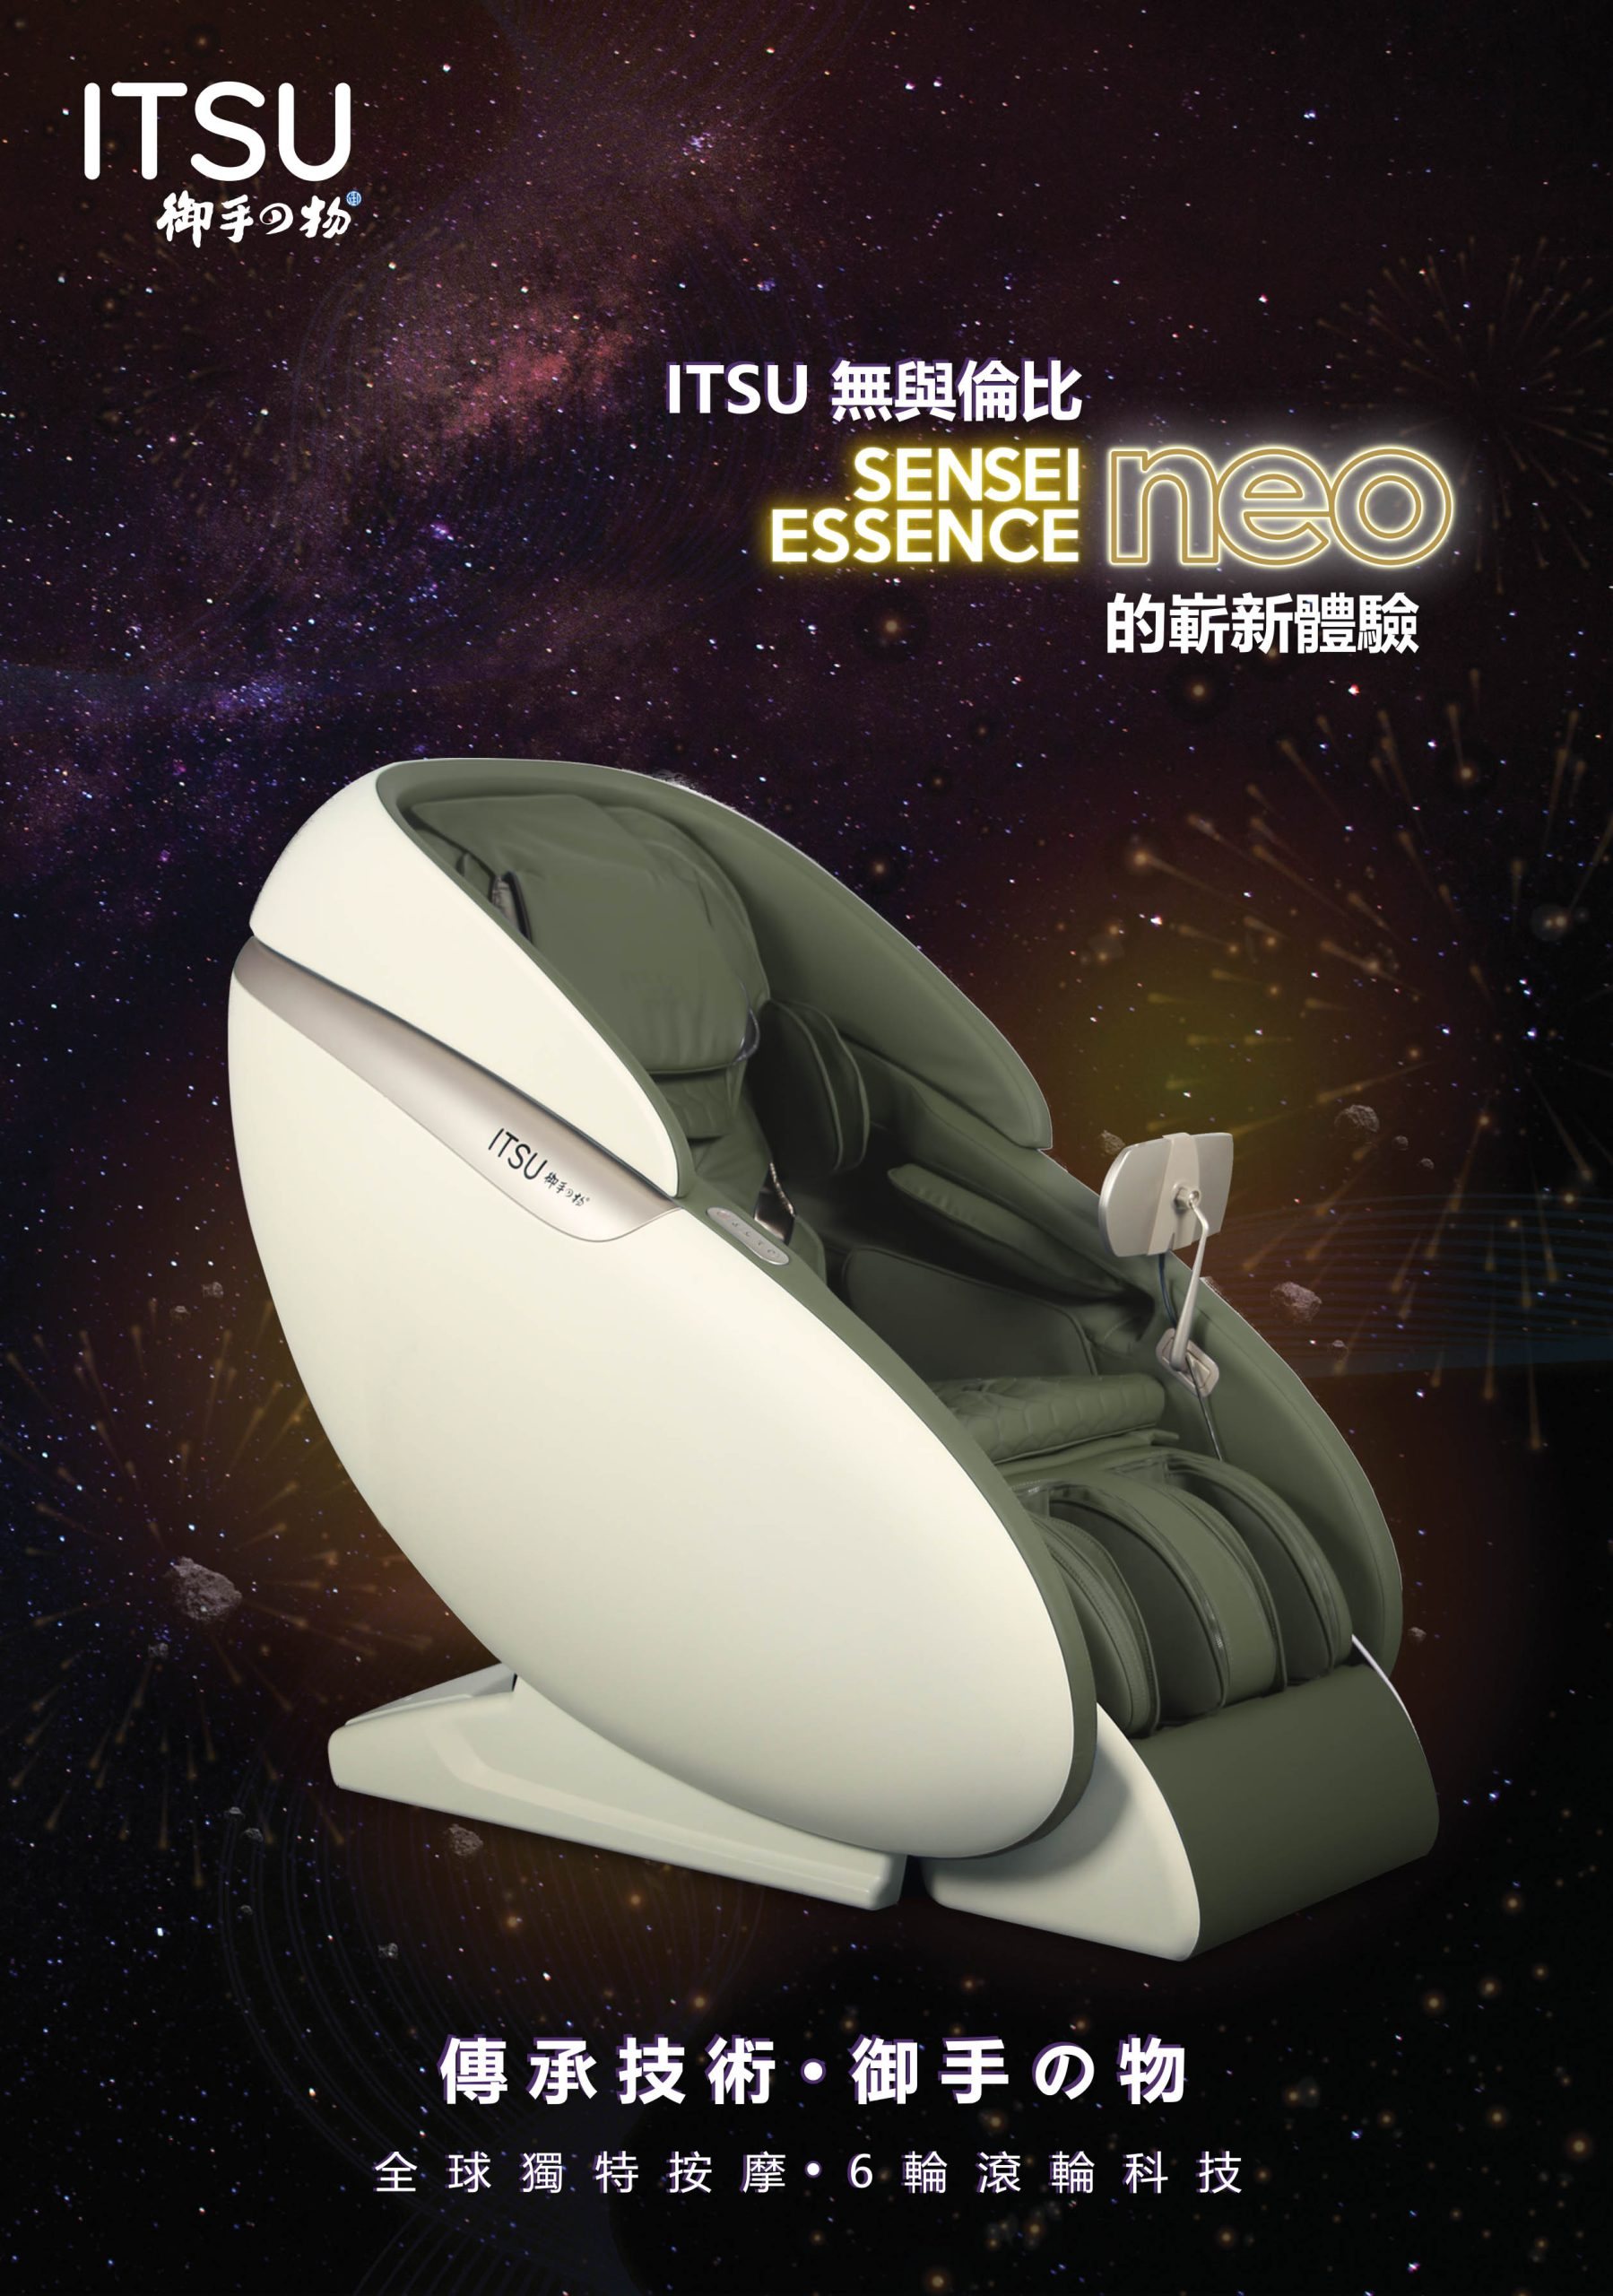 【已停產】ITSU 御手の物 IS-7018A-BW SENSEI ESSENCE Neo 按摩椅 (啡白色)